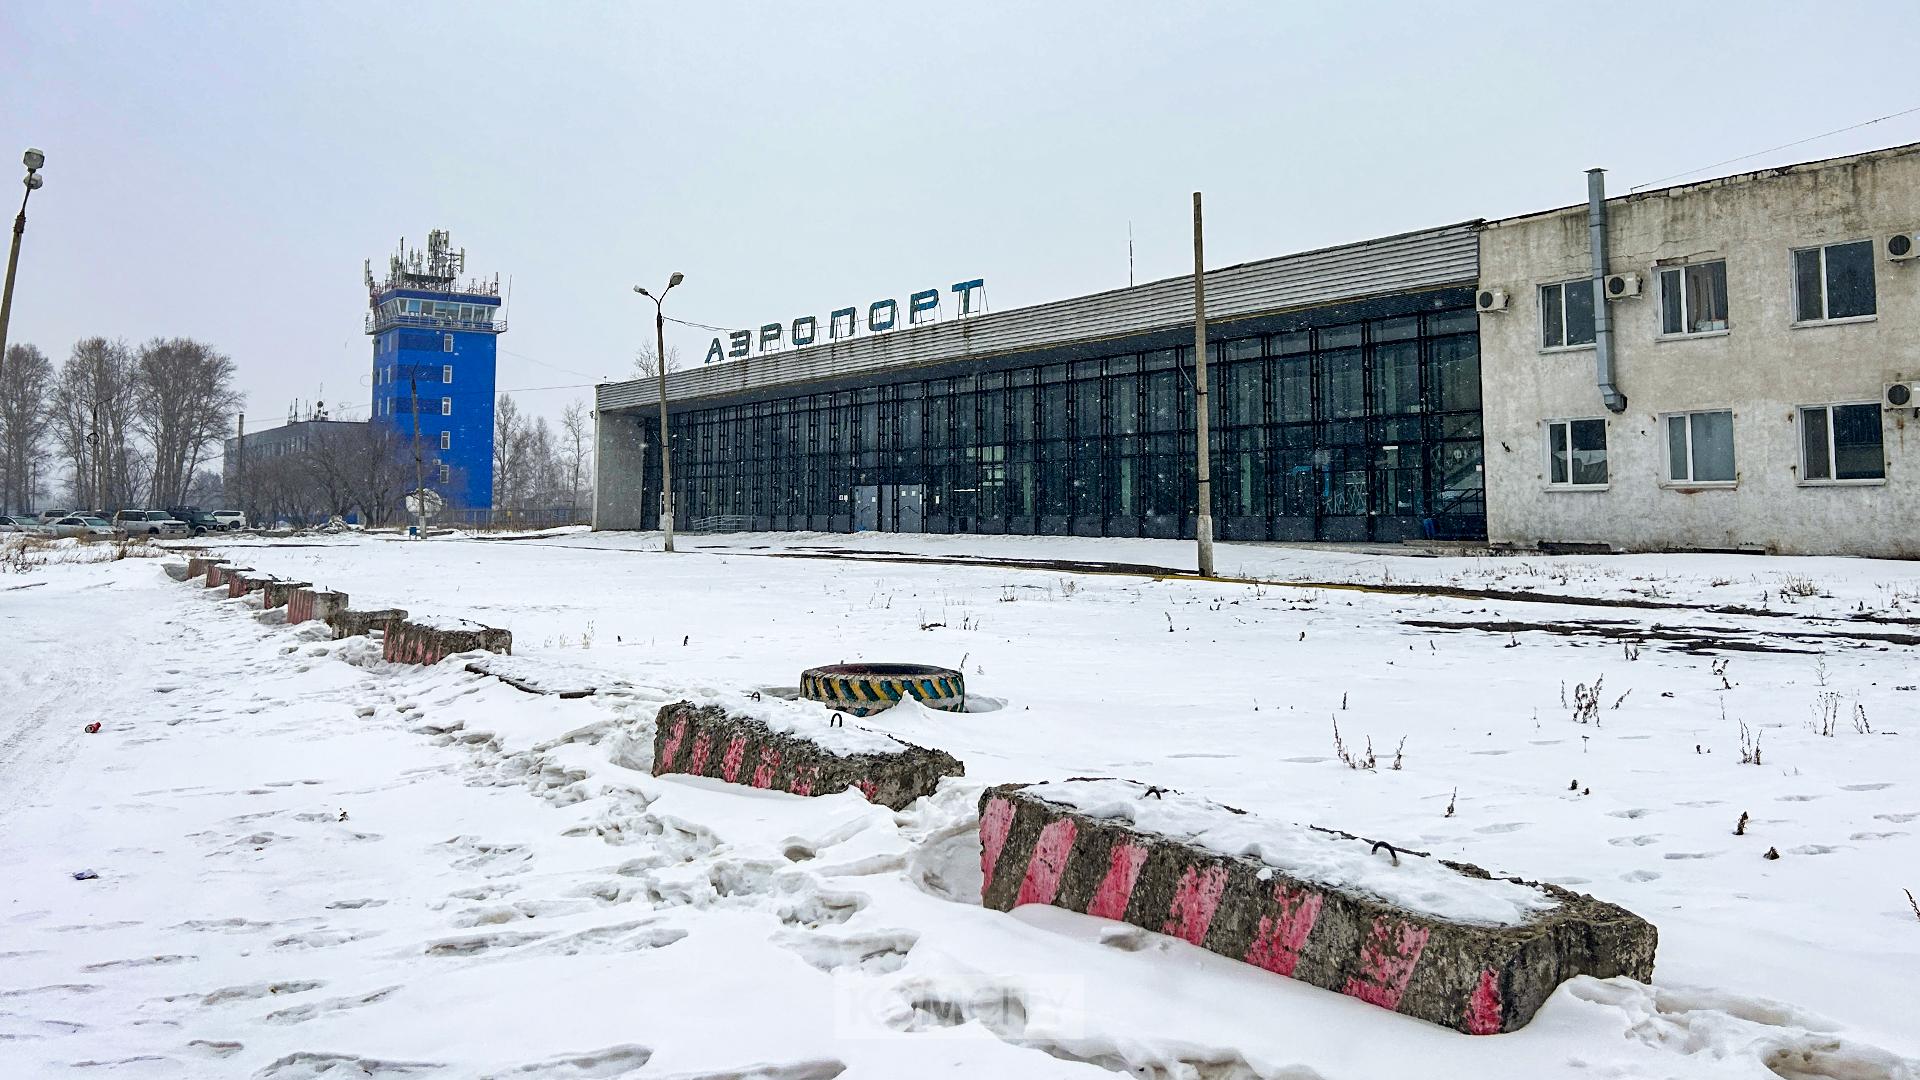 Аэропорт Комсомольска по-прежнему остаётся закрытым «на лопату». Как минимум до октября.